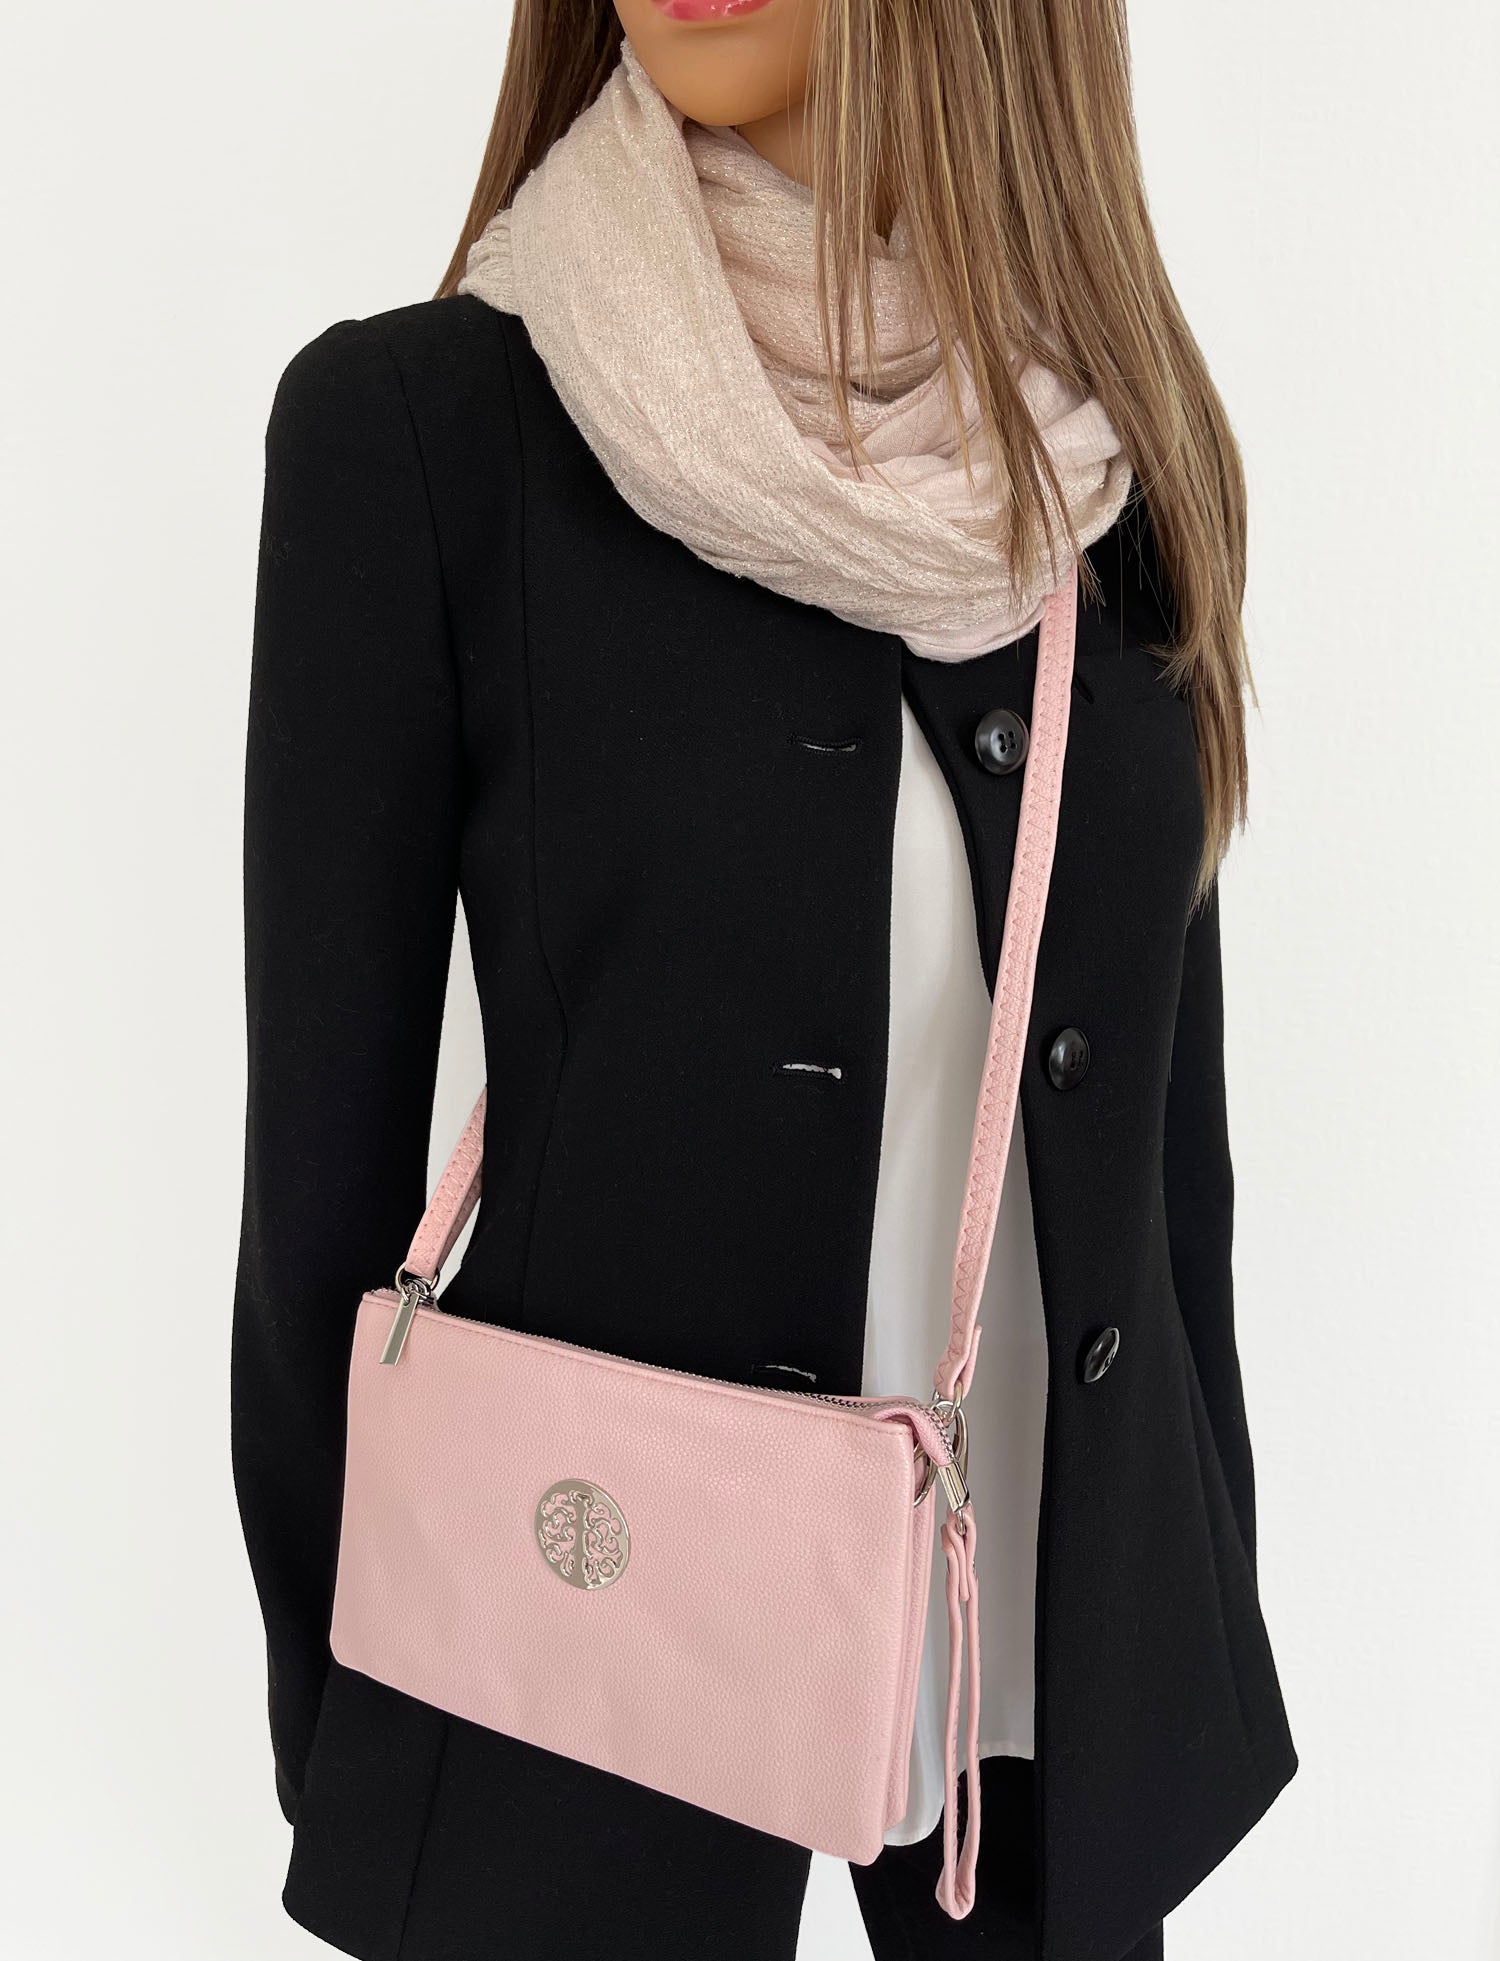 Ambra | Italian Leather Bag | AMA Bags